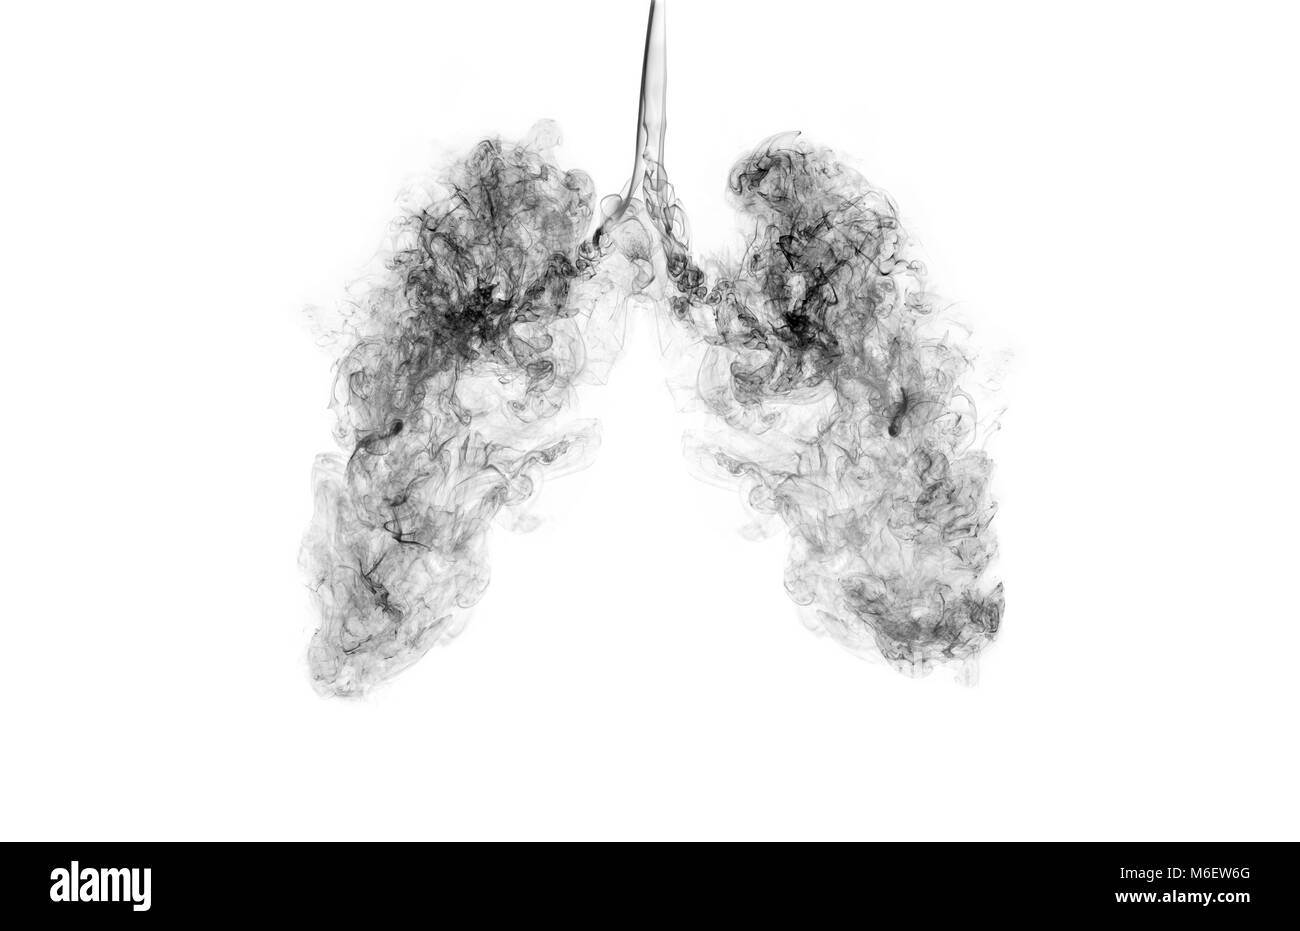 Un concept de droit lorsque la fumée pénètre dans les poumons. Campagne pour cesser de fumer ou qui vivent dans une zone polluée. Banque D'Images